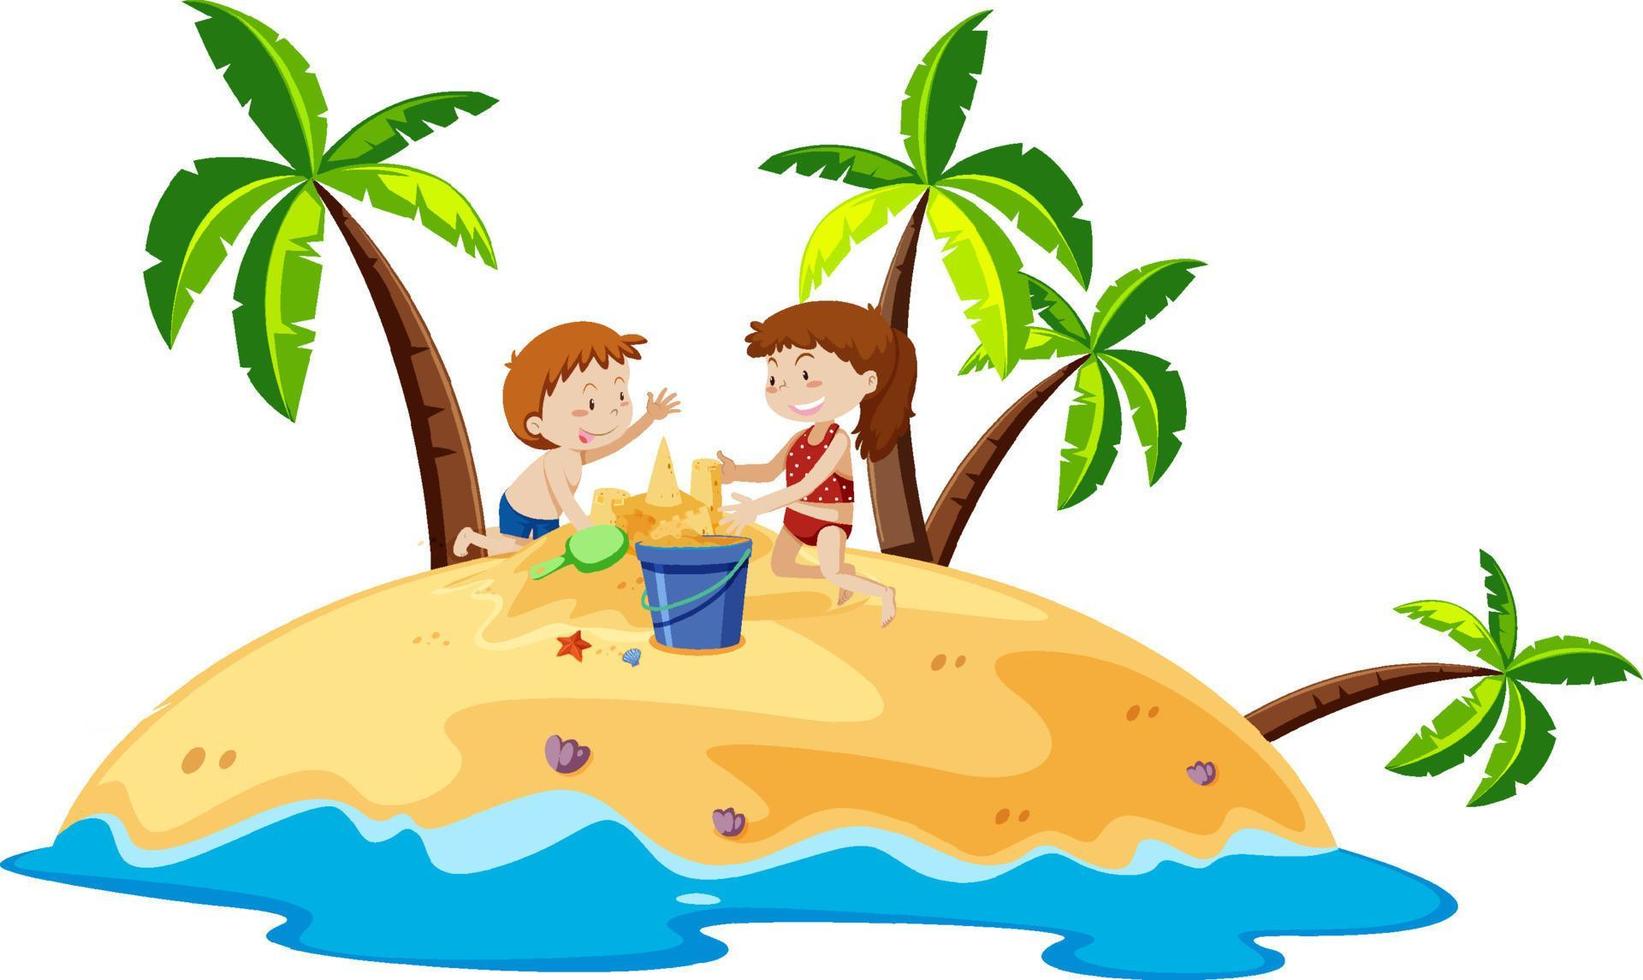 Kinder bauen Sandburgen auf der Insel vektor